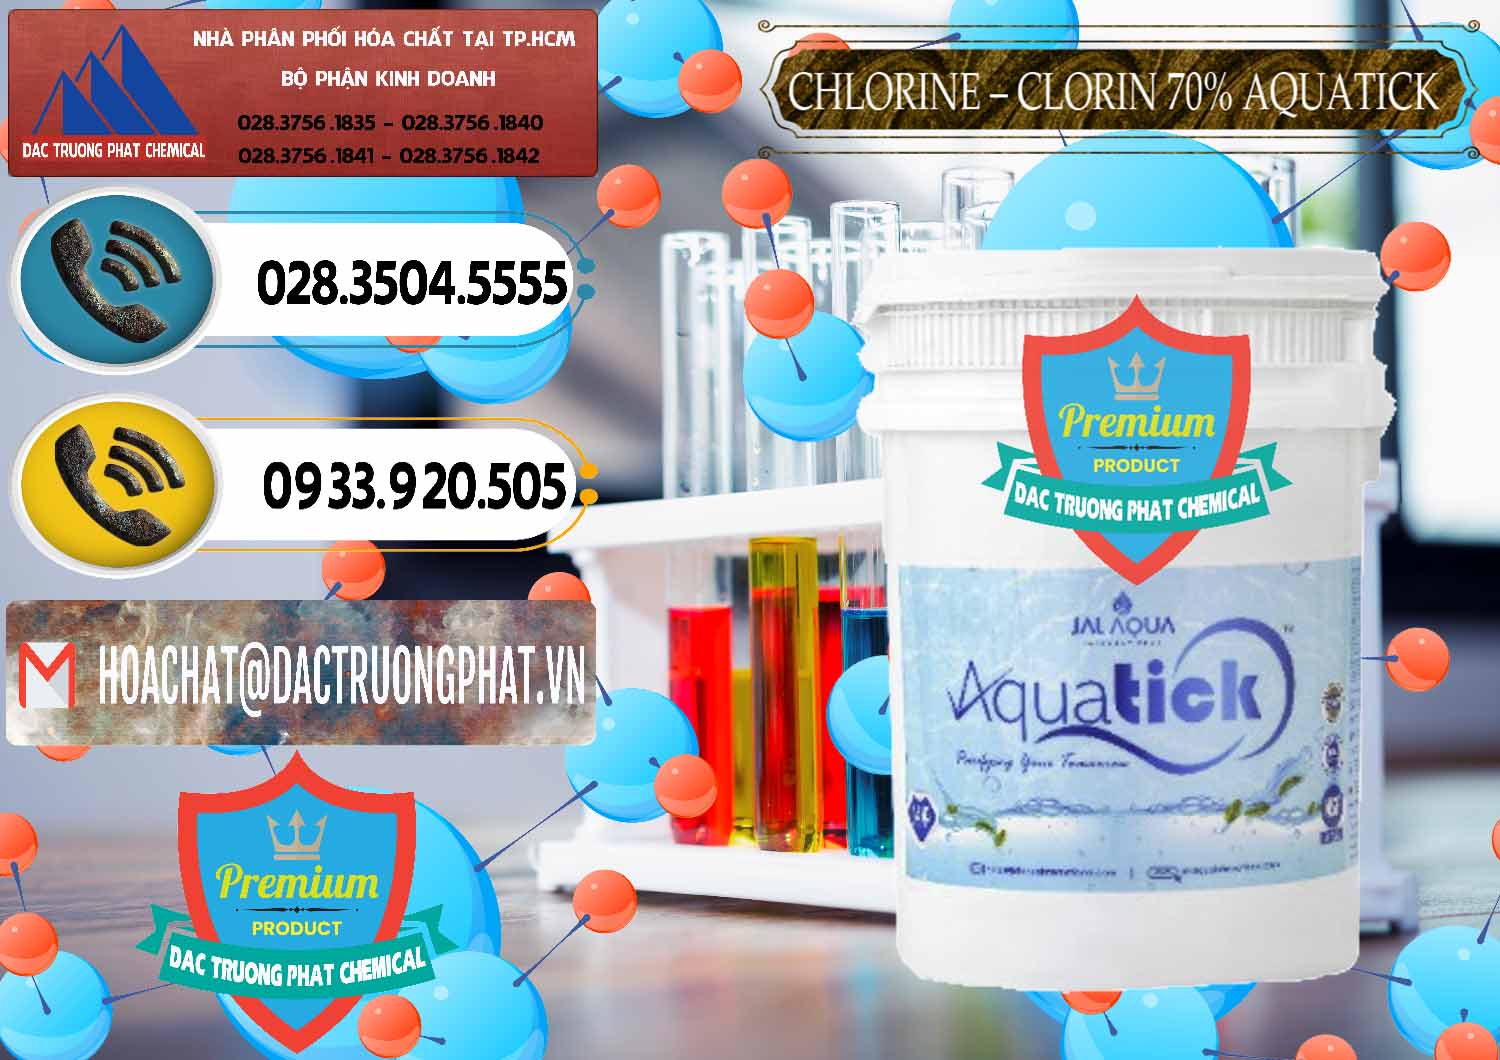 Cty chuyên bán _ cung ứng Chlorine – Clorin 70% Aquatick Thùng Cao Jal Aqua Ấn Độ India - 0237 - Công ty chuyên bán _ cung cấp hóa chất tại TP.HCM - hoachatdetnhuom.vn